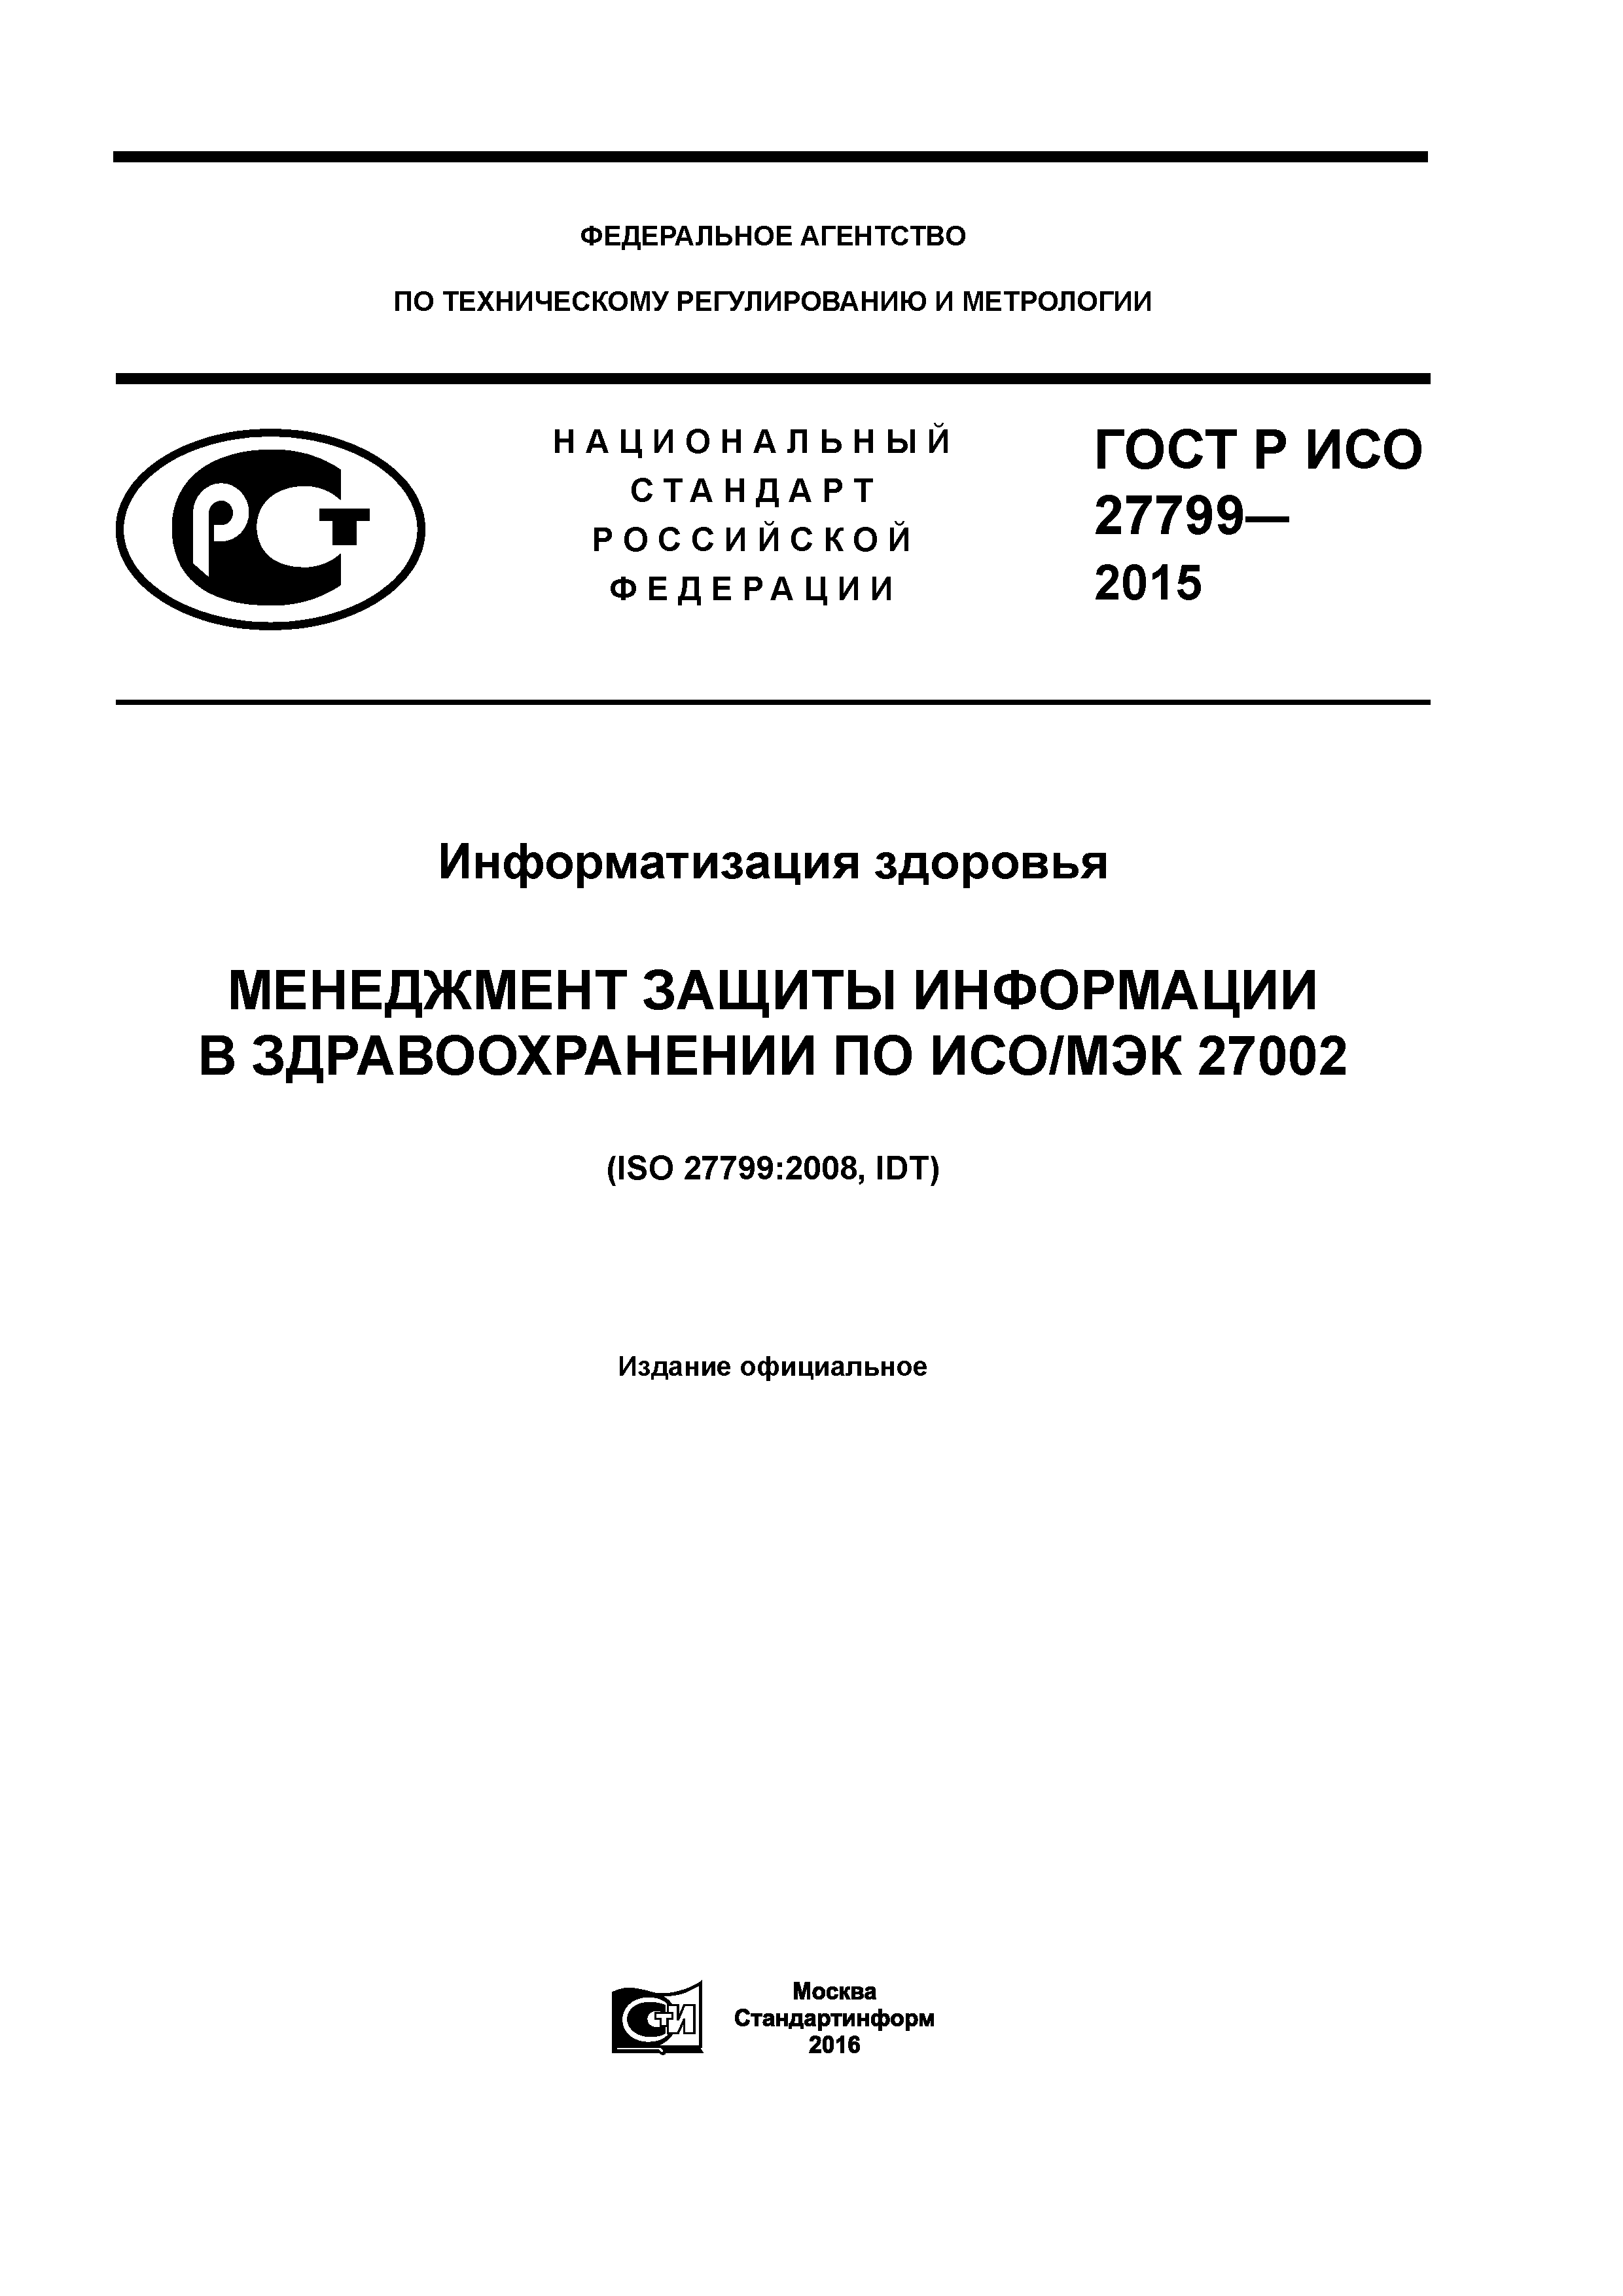 ГОСТ Р ИСО 27799-2015